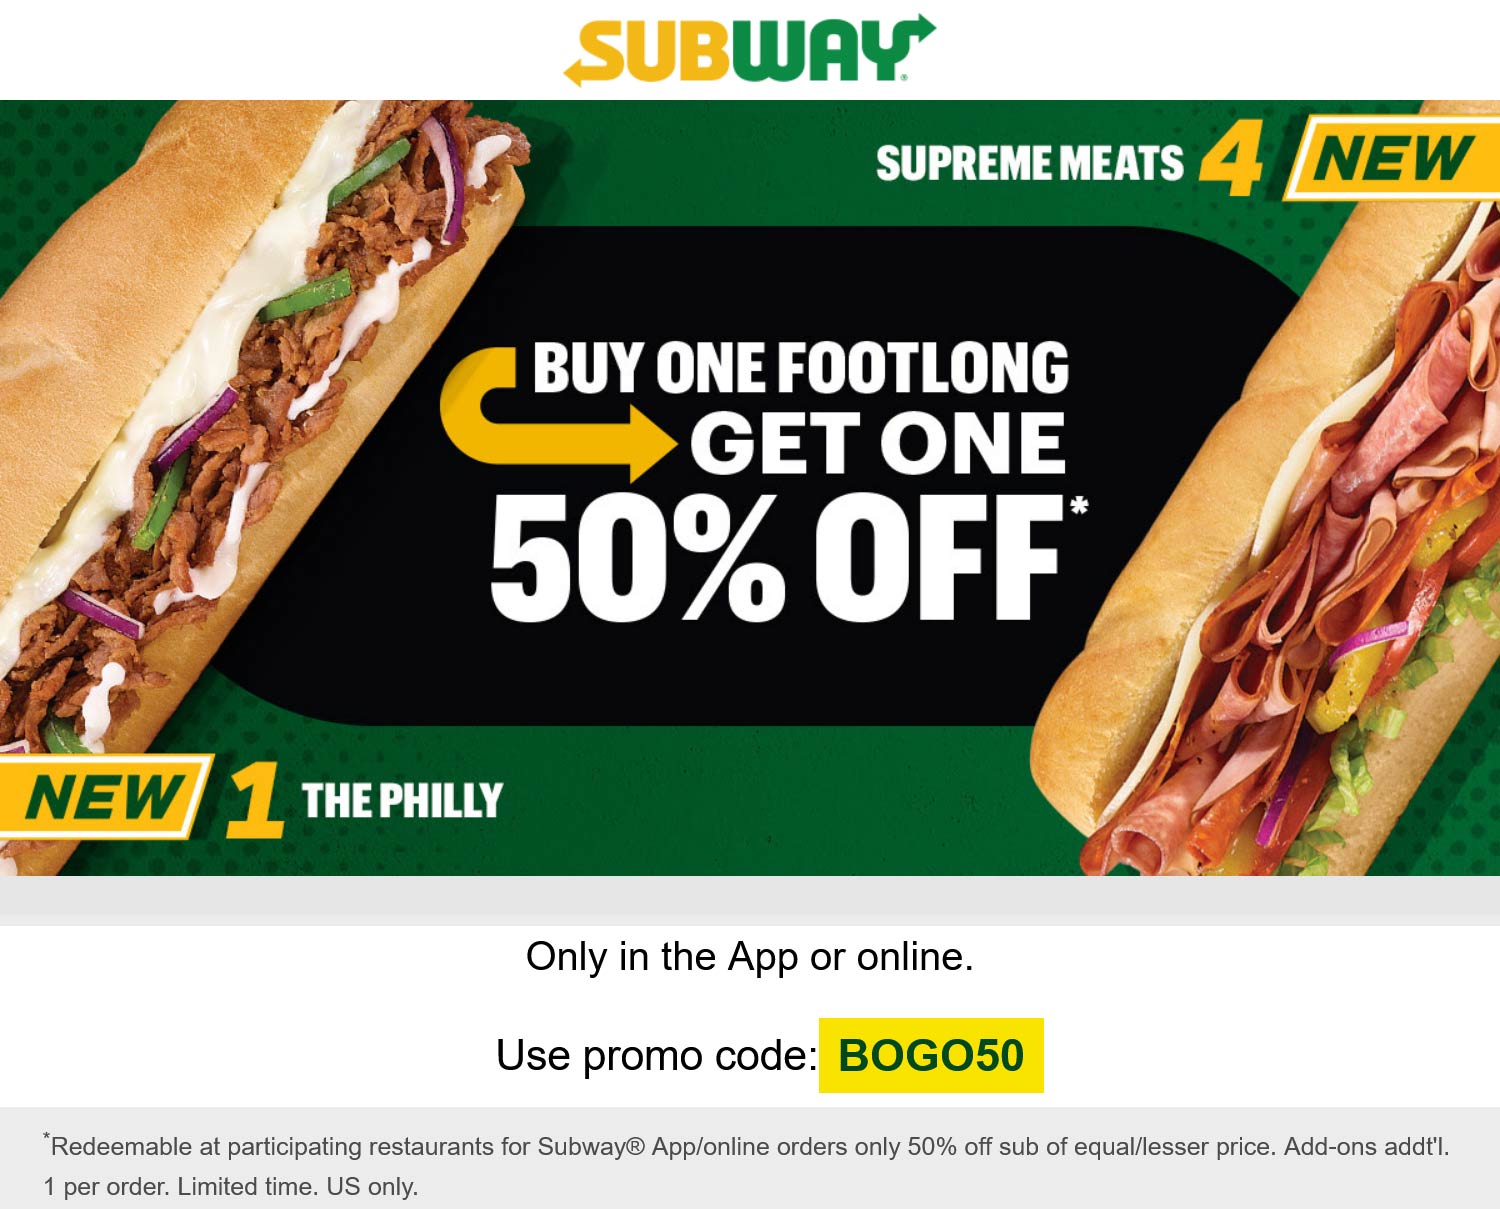 Subway restaurants Coupon  Second footlong sub sandwich 50% off at Subway via promo code BOGO50 #subway 